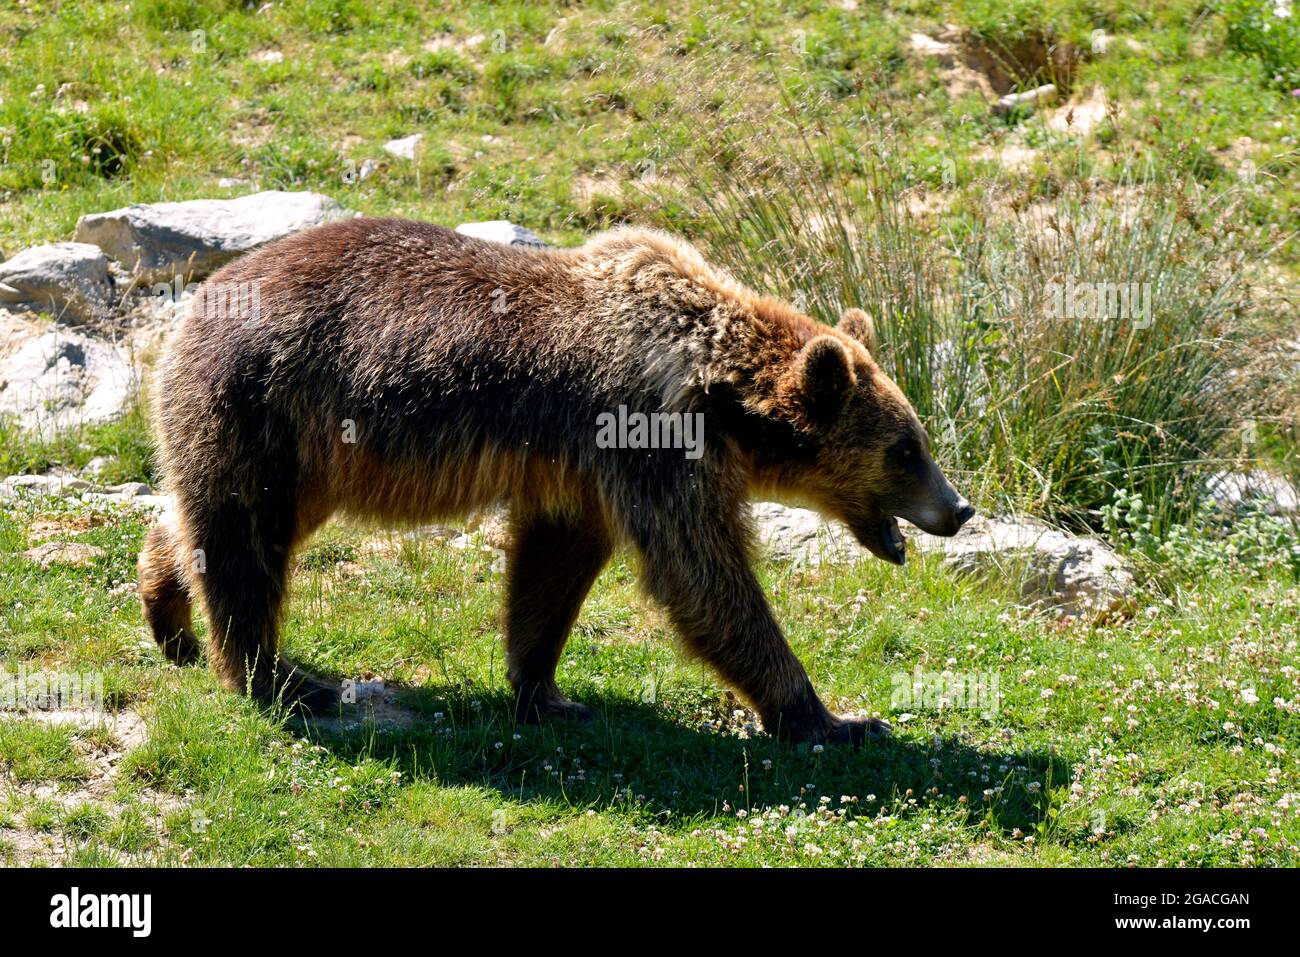 Braunbär (Ursus arctos) vom Profil aus gesehen, der auf Gras, dem offenen Mund, läuft Stockfoto